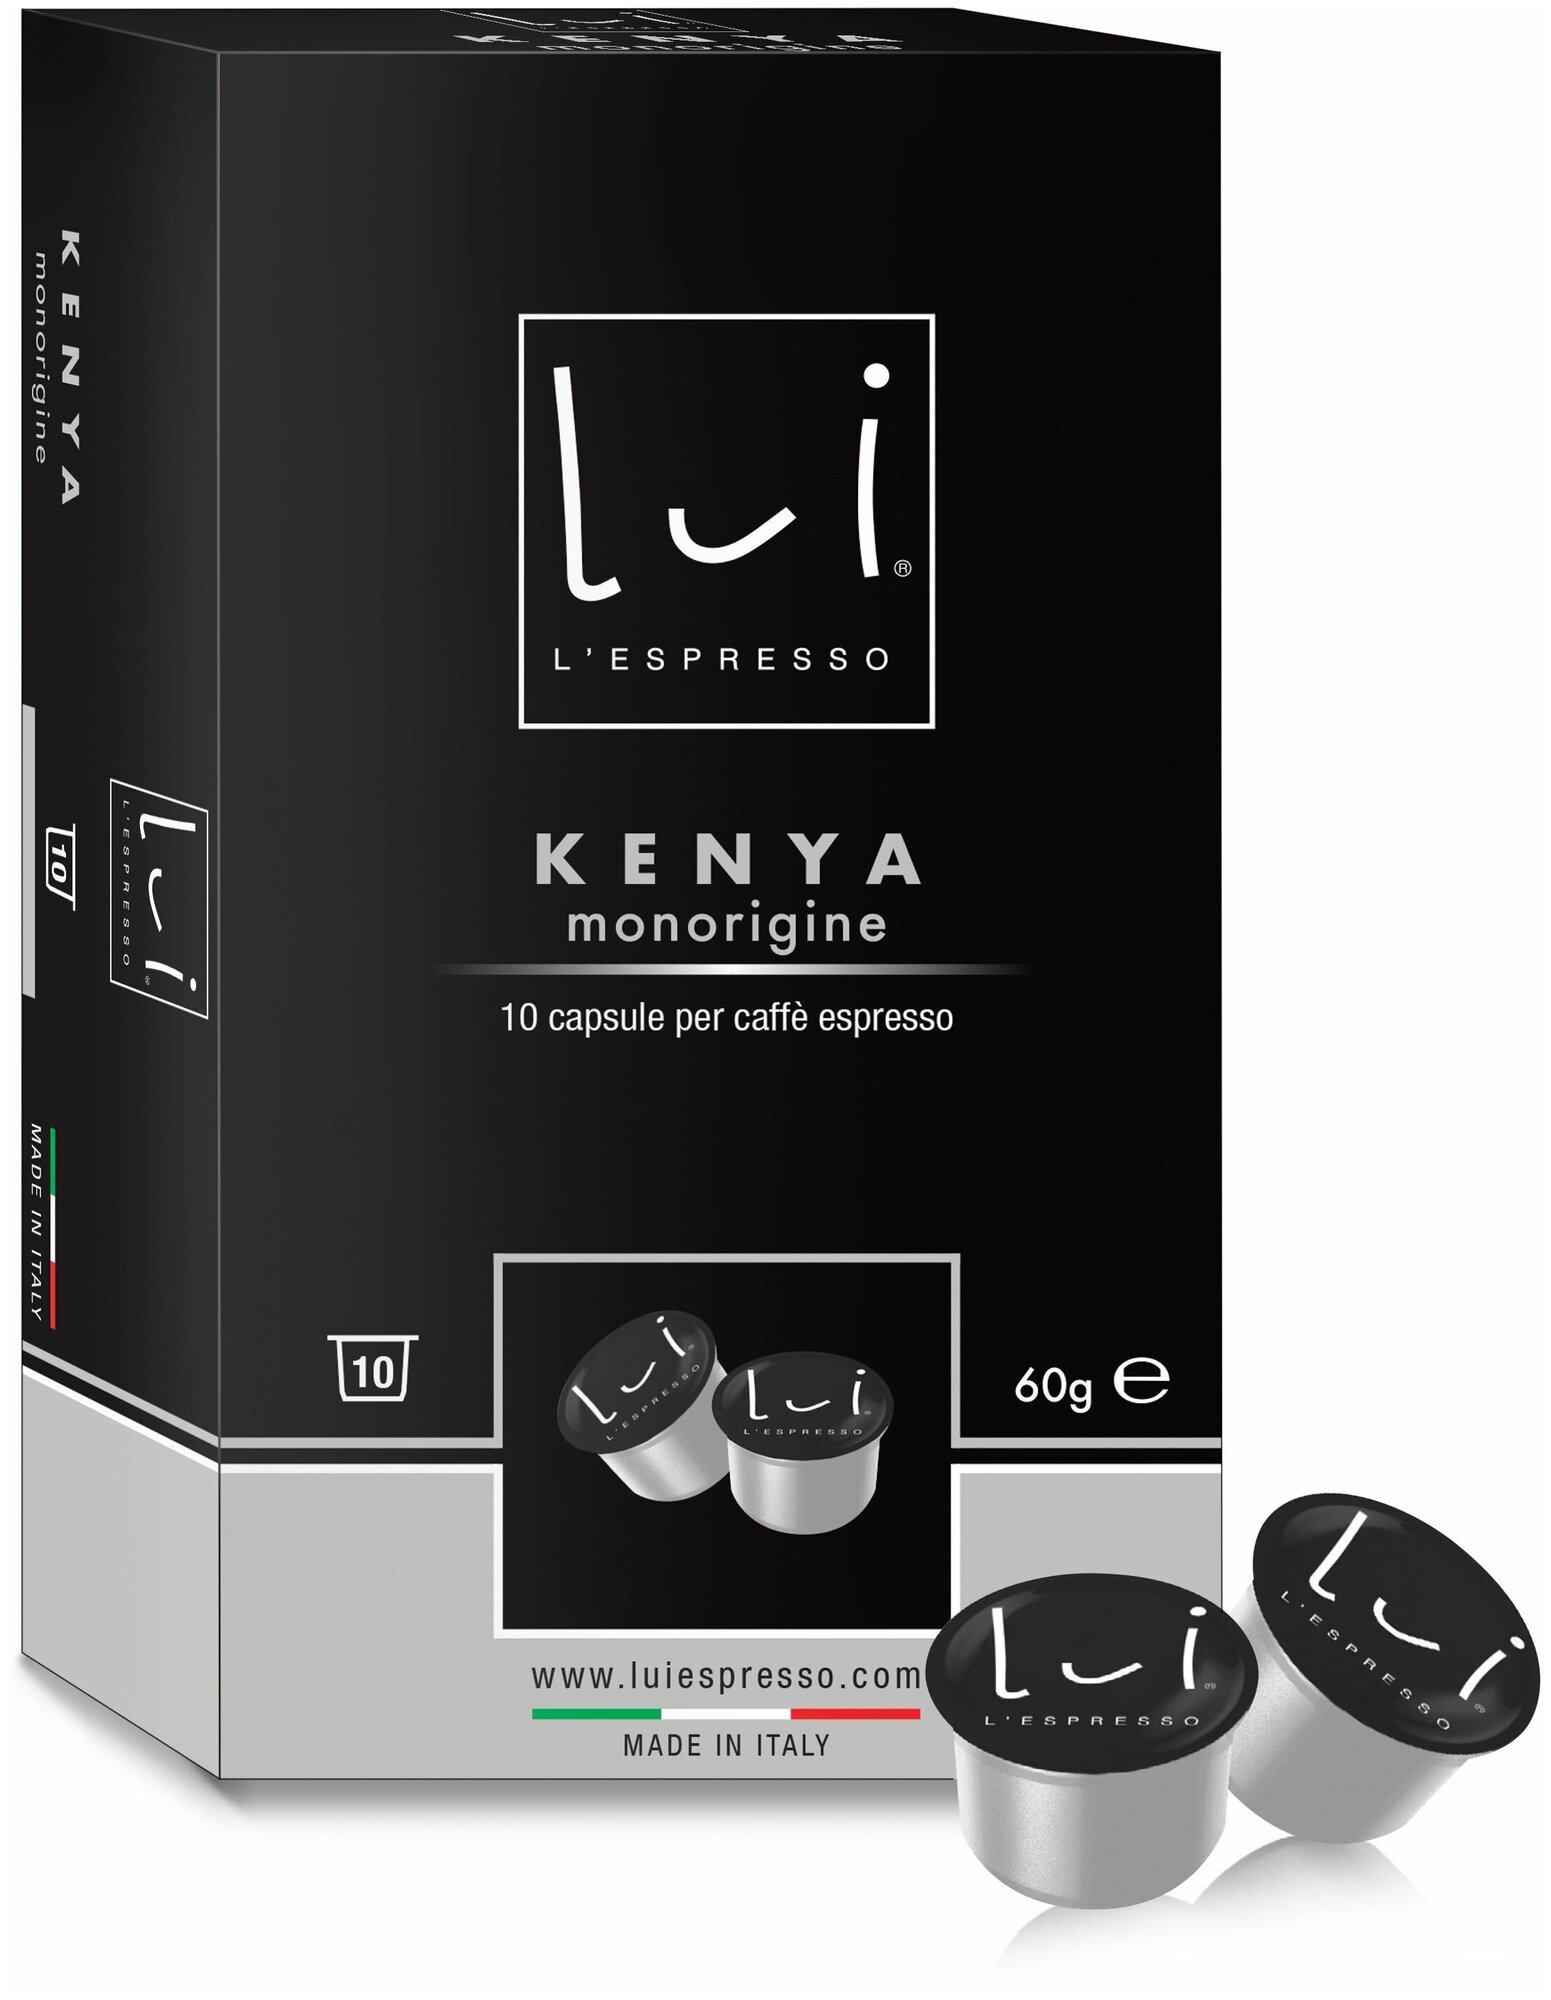 Кофе в капсулах Lui L'espresso Kenya monorigine, для кофемашин Lui L'espresso, 10 капсул